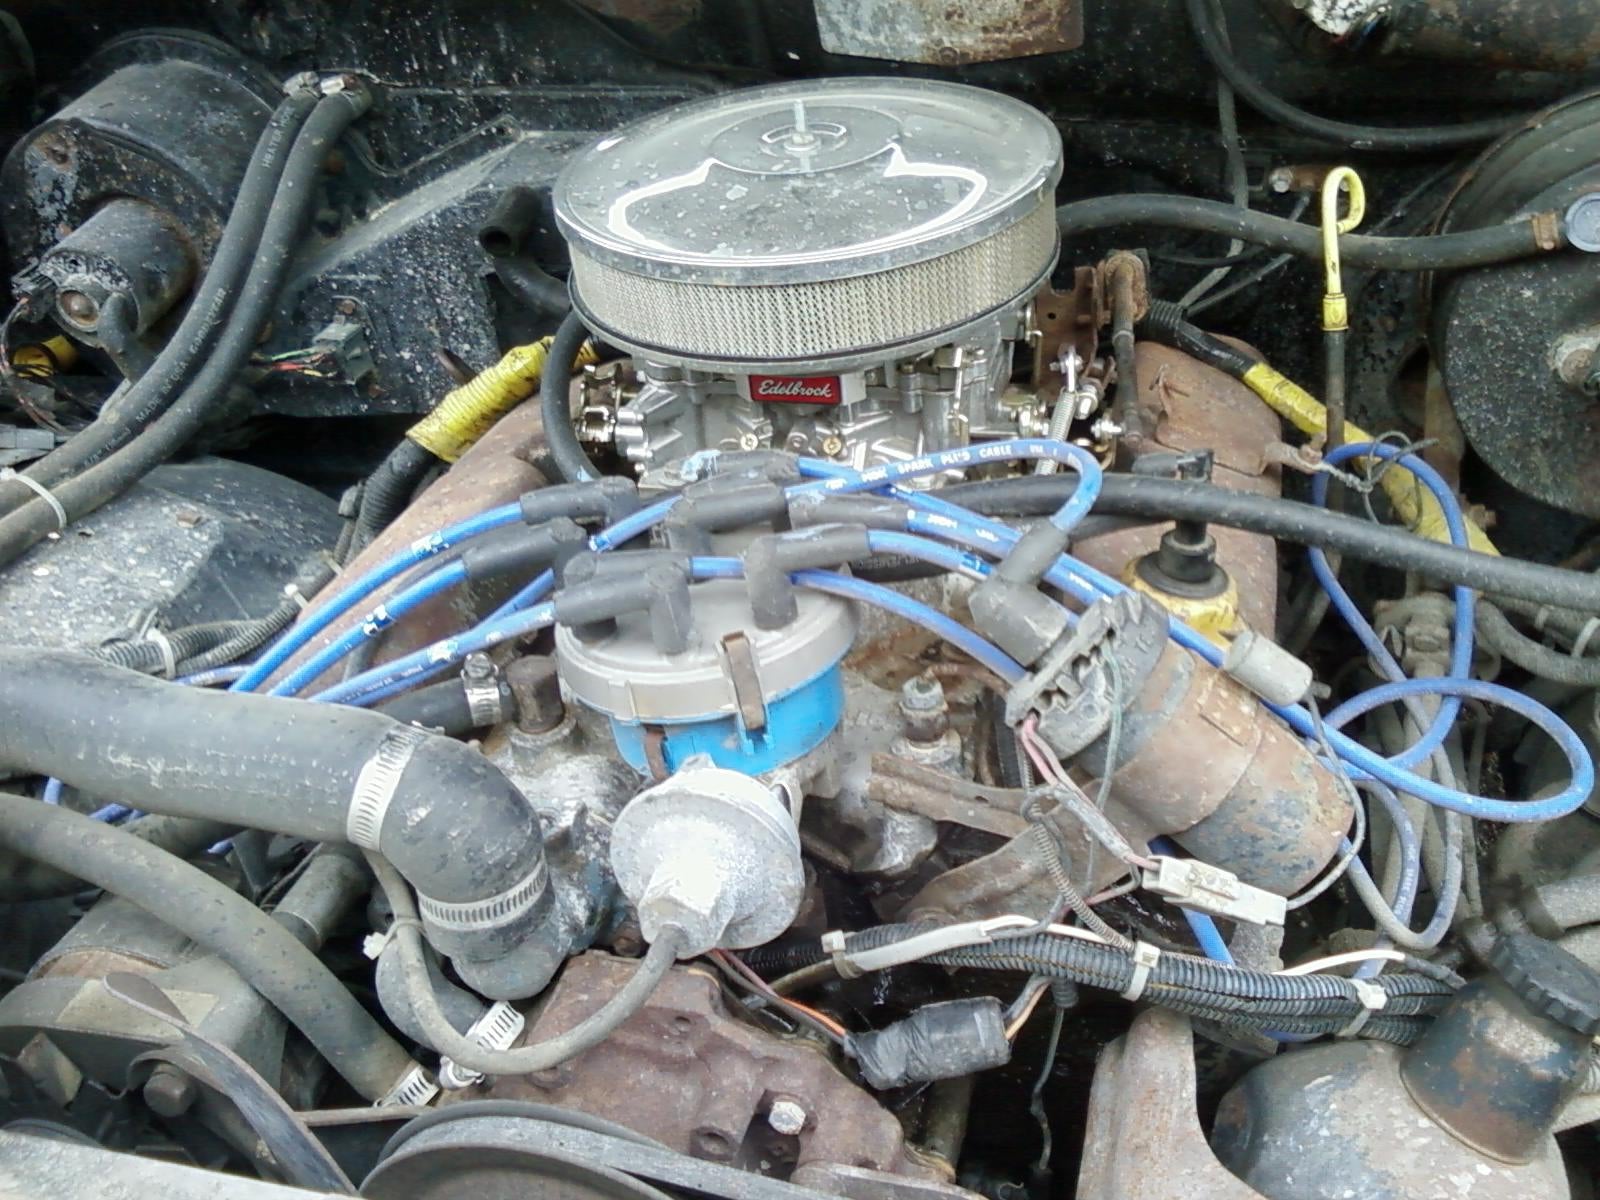 1998 Ford ranger engine swaps #3